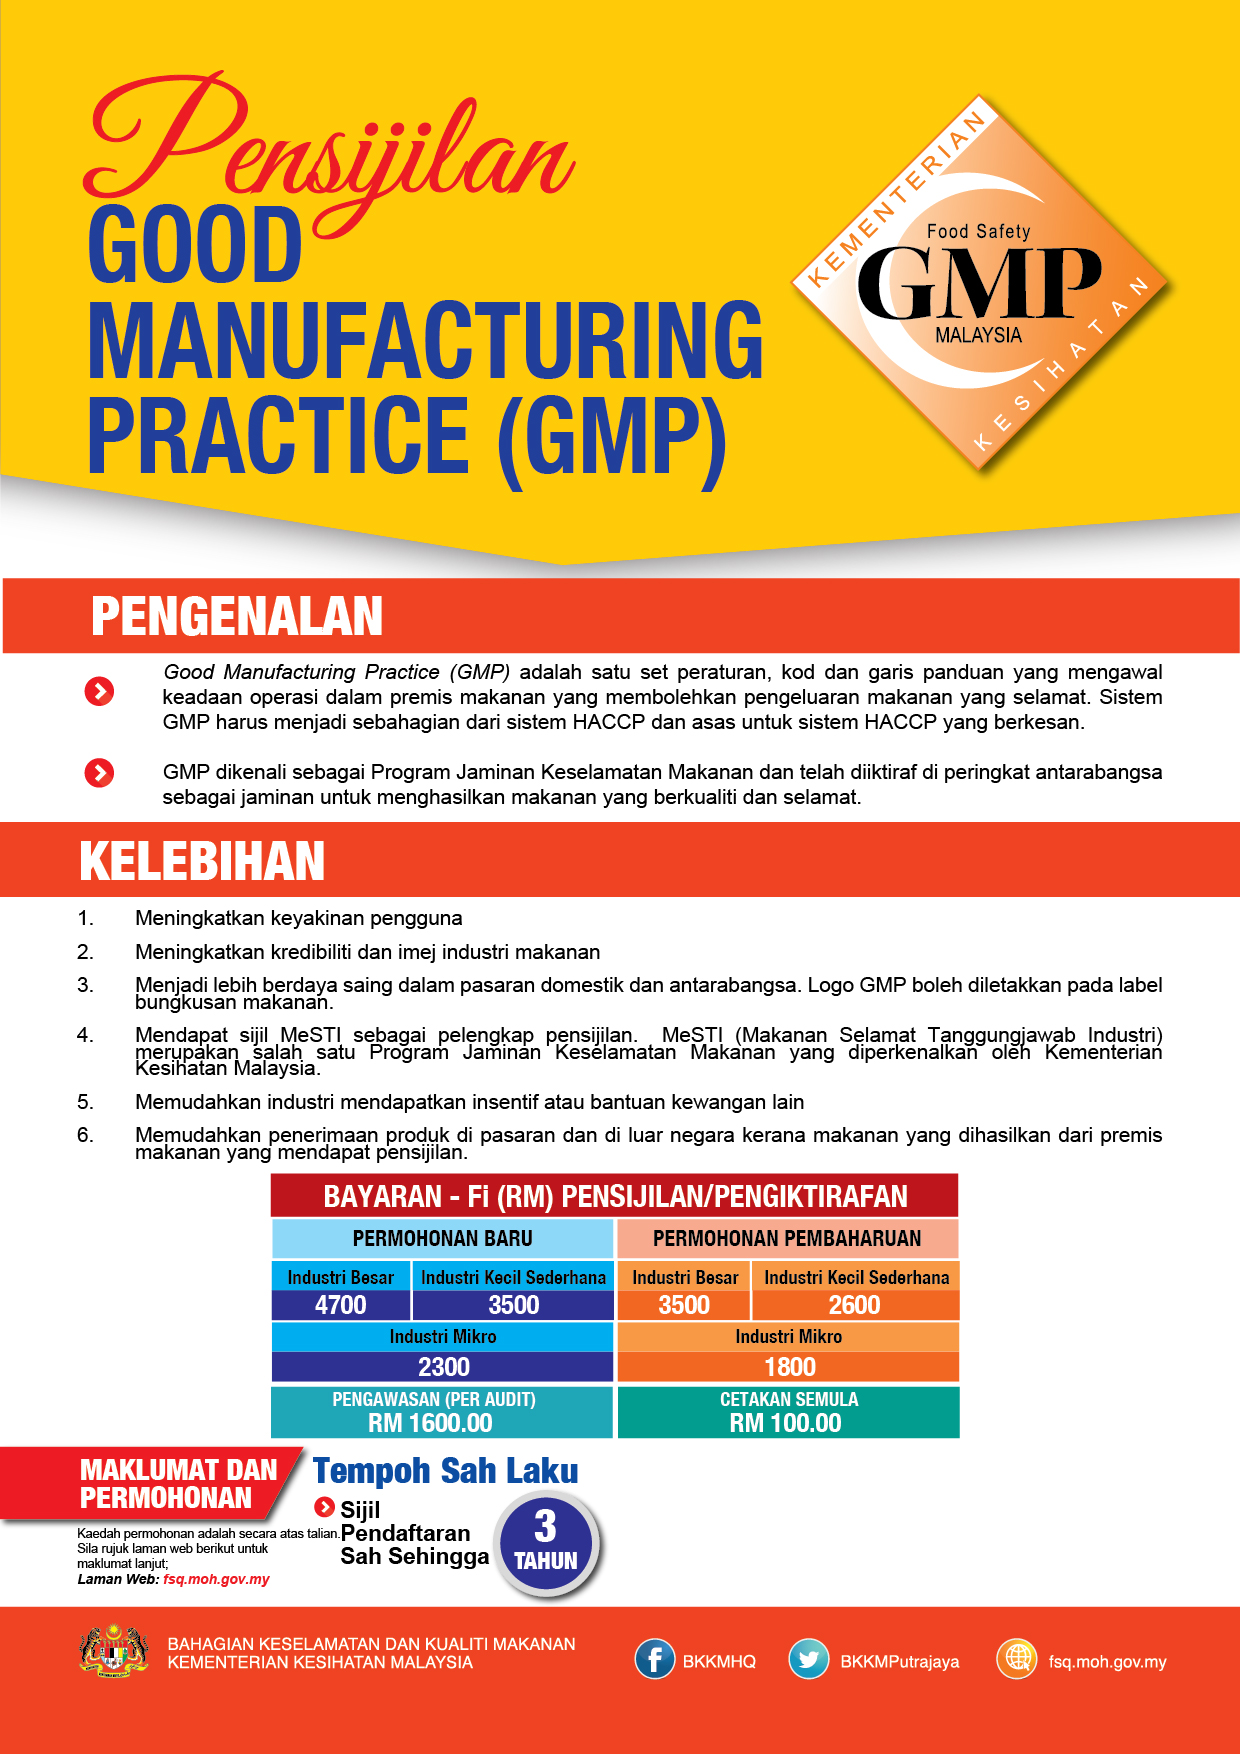 BKKM - Pensijilan Good Manufacturing Practice (GMP)